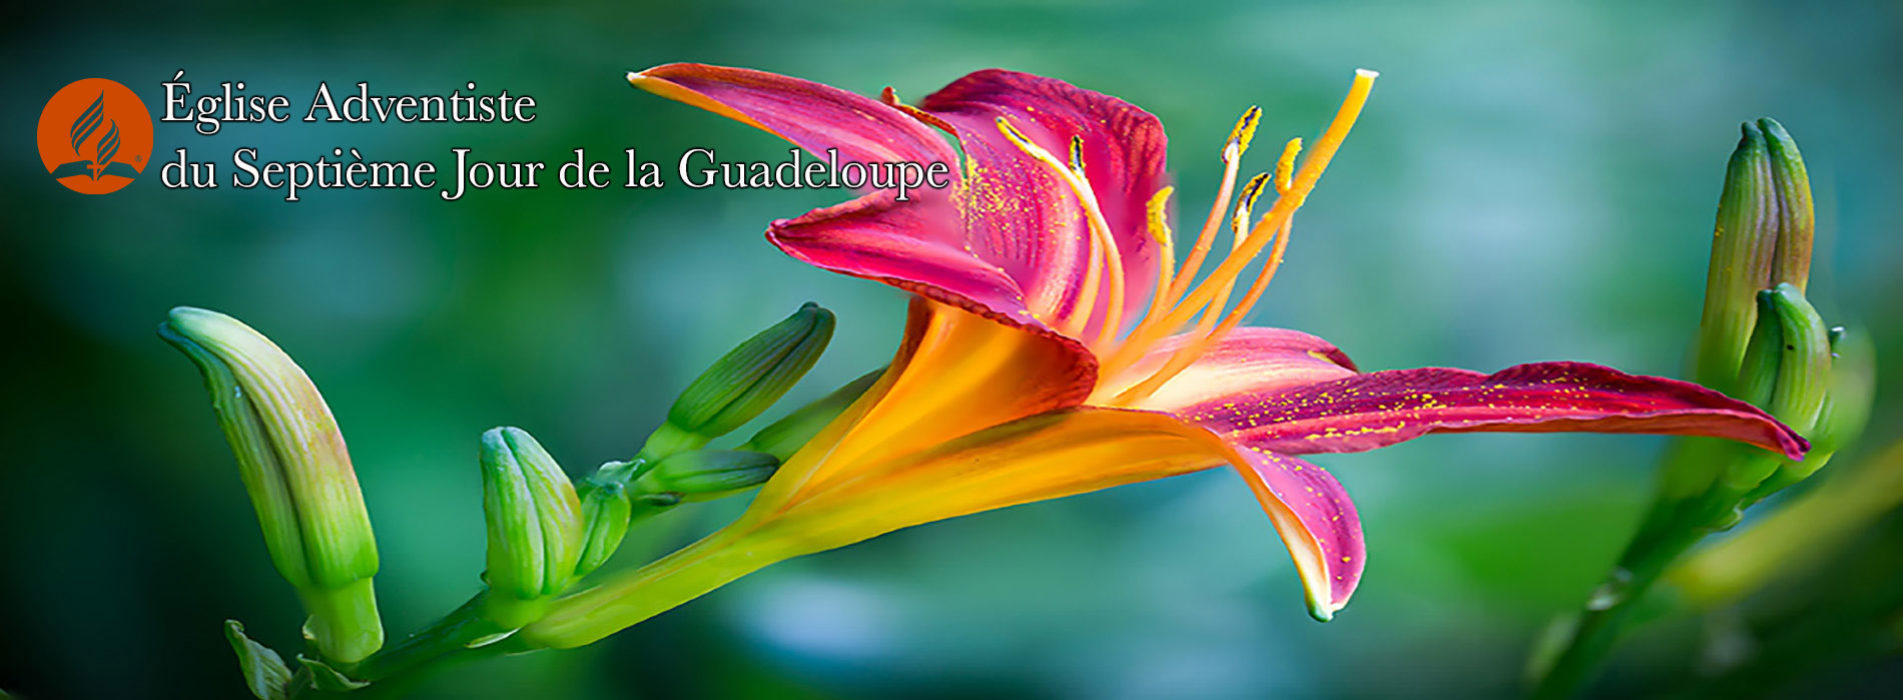 Eglise Adventiste du 7ème Jour de la Guadeloupe